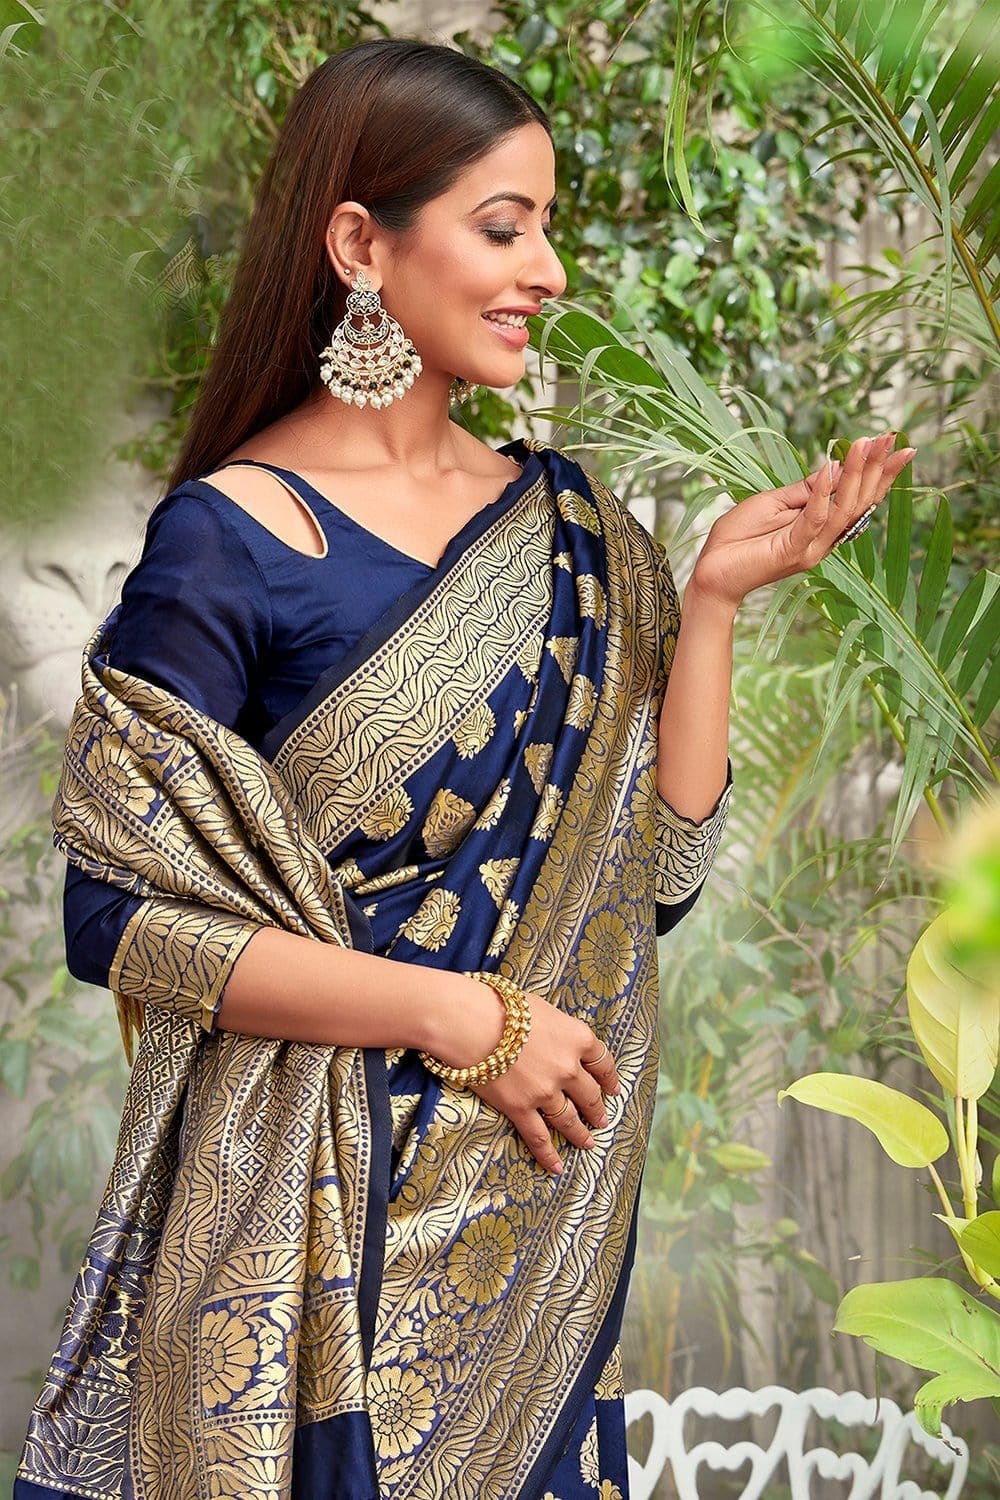 Where should I get the best quality silk saree? - Quora